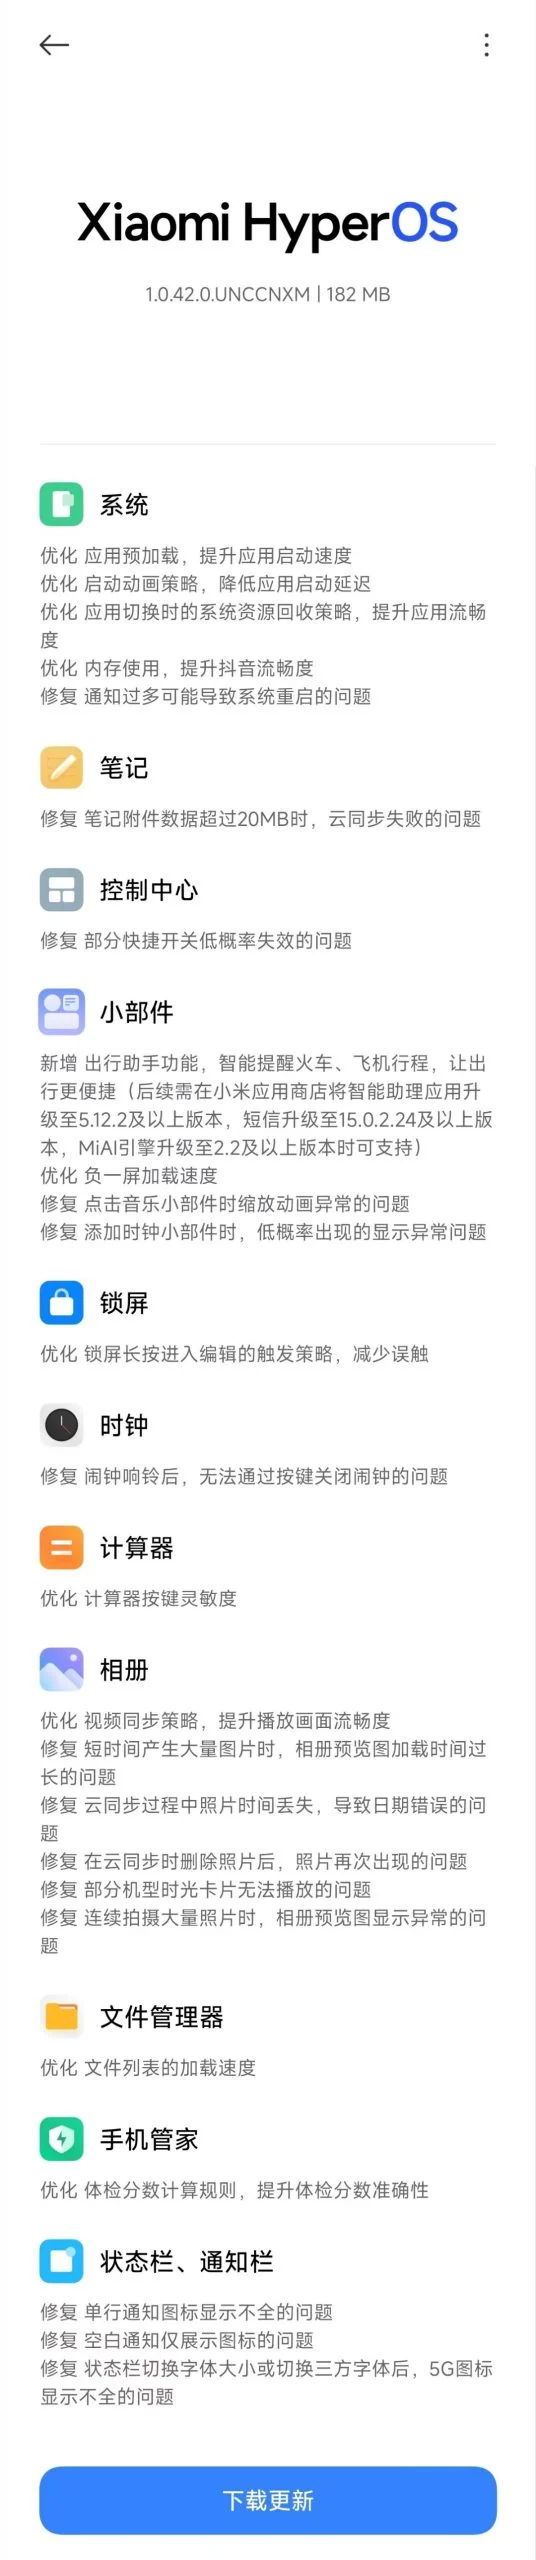 (Fonte da imagem: Xiaomi via Gizmochina)